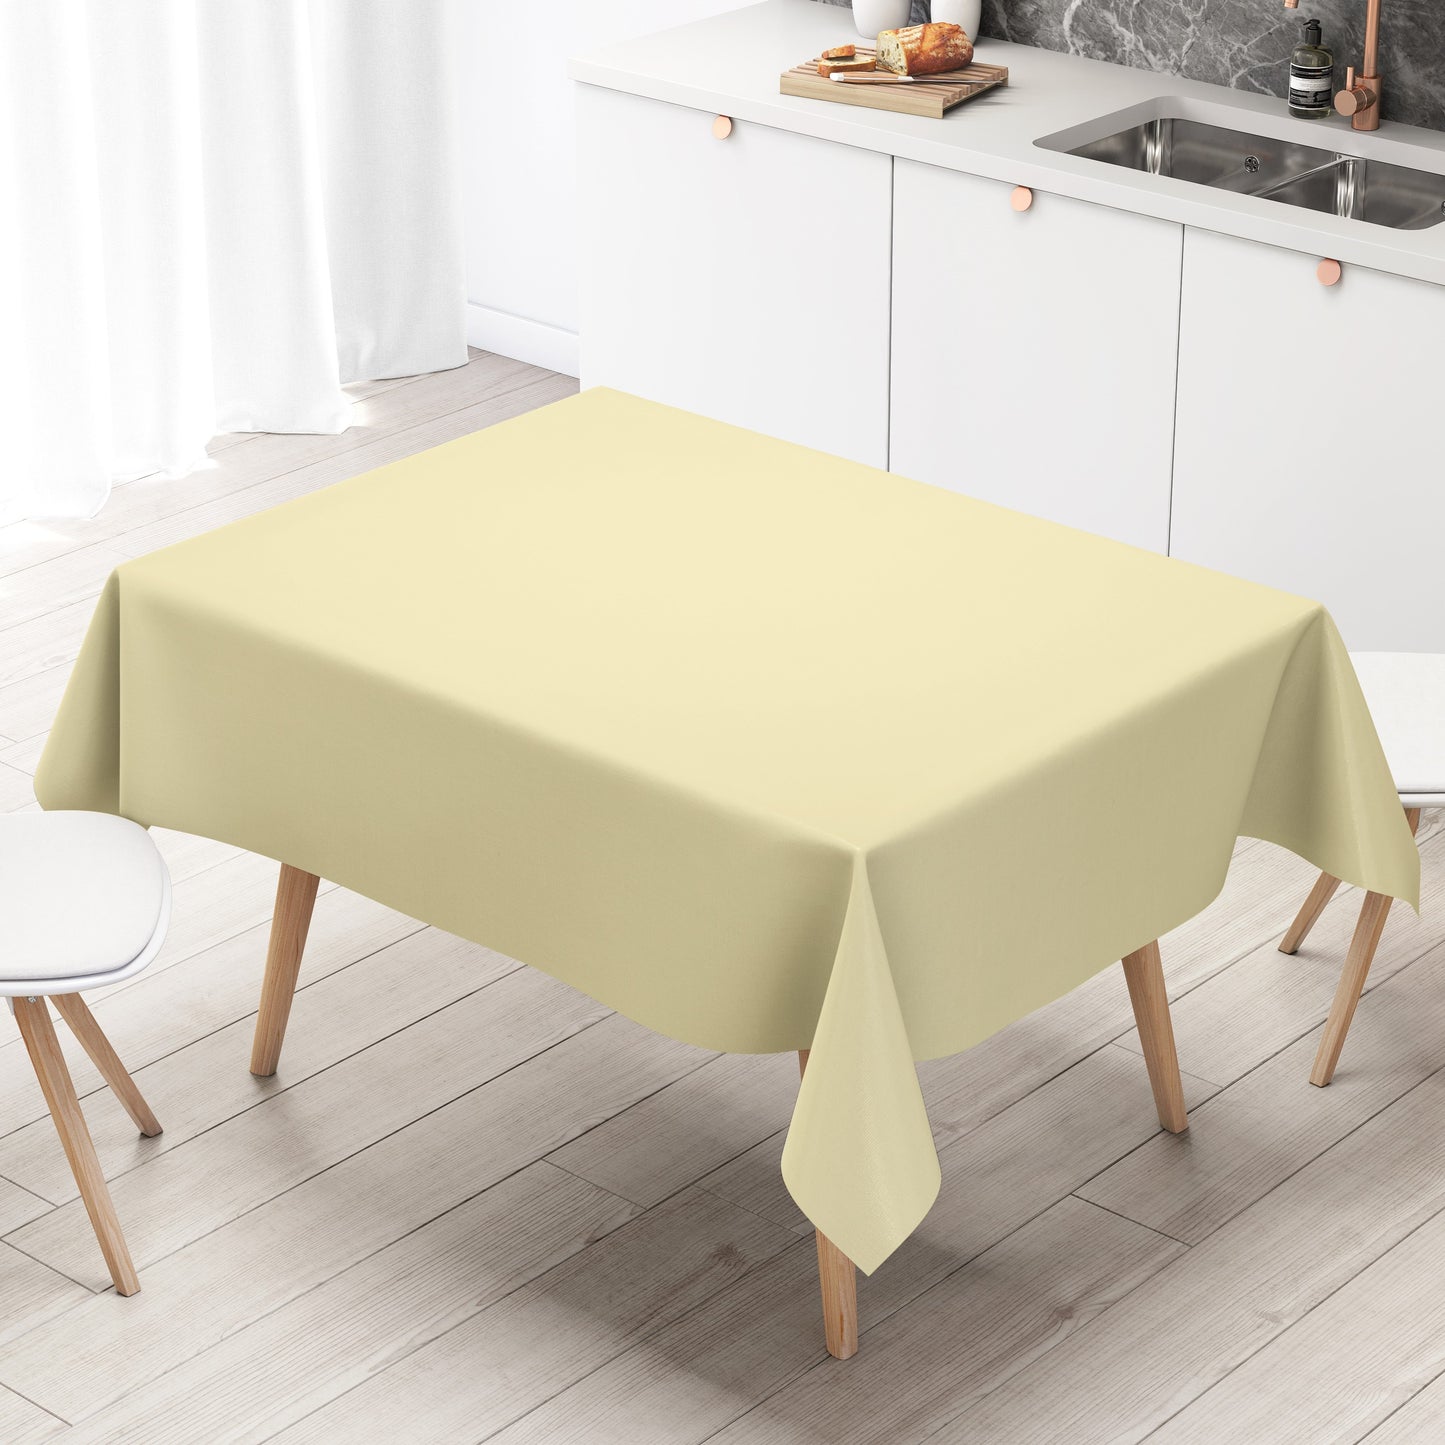 KEVKUS Wachstuch Tischdecke uni 7 beige creme einfarbig wählbar in eckig, rund und oval -